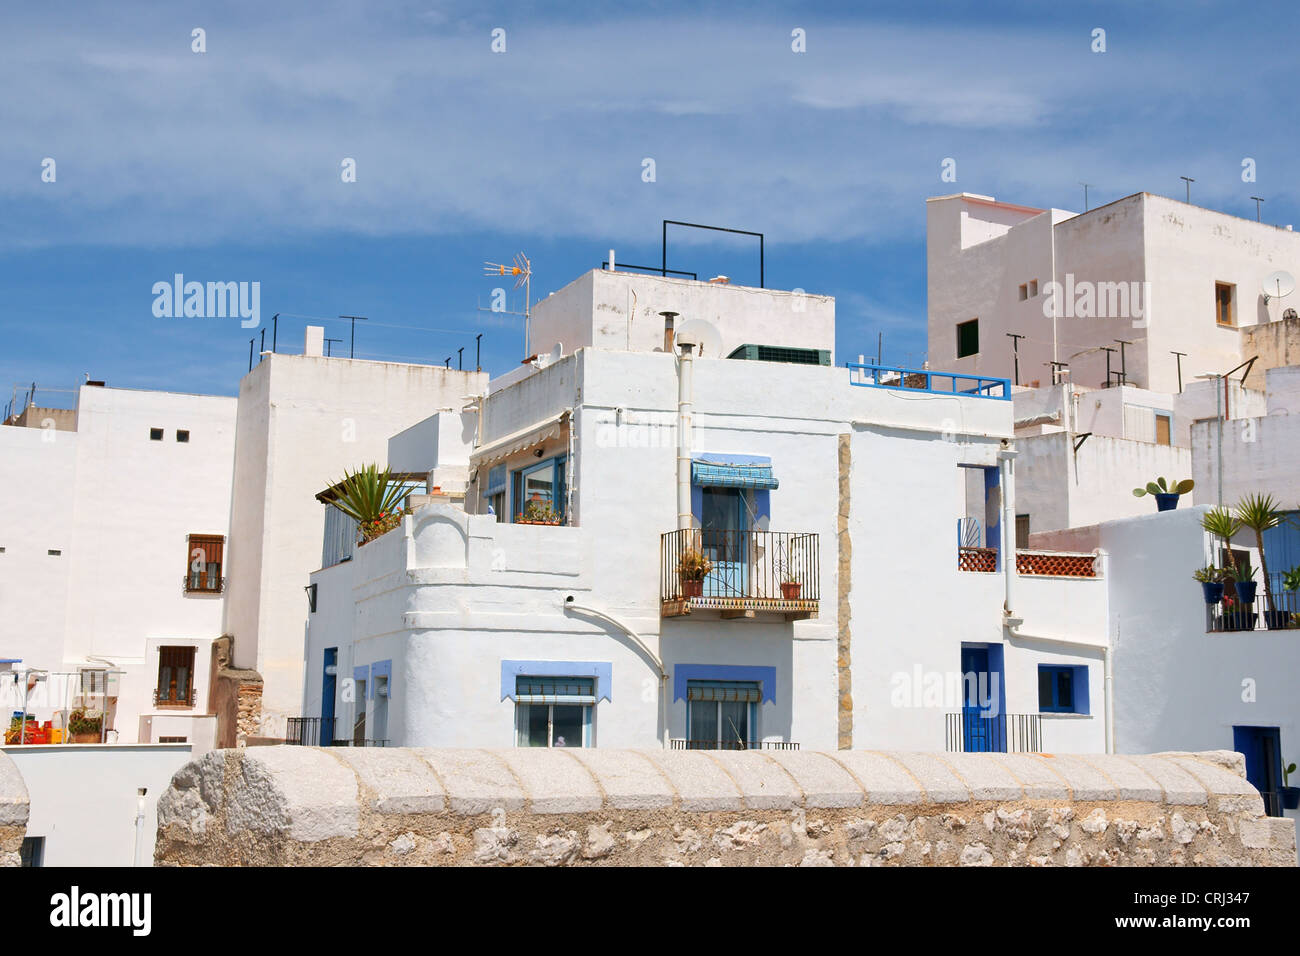 Vistazo de Peñíscola, con sus casas blancas y azules y azoteas. Comunidad Autónoma Valenciana, España. Foto de stock